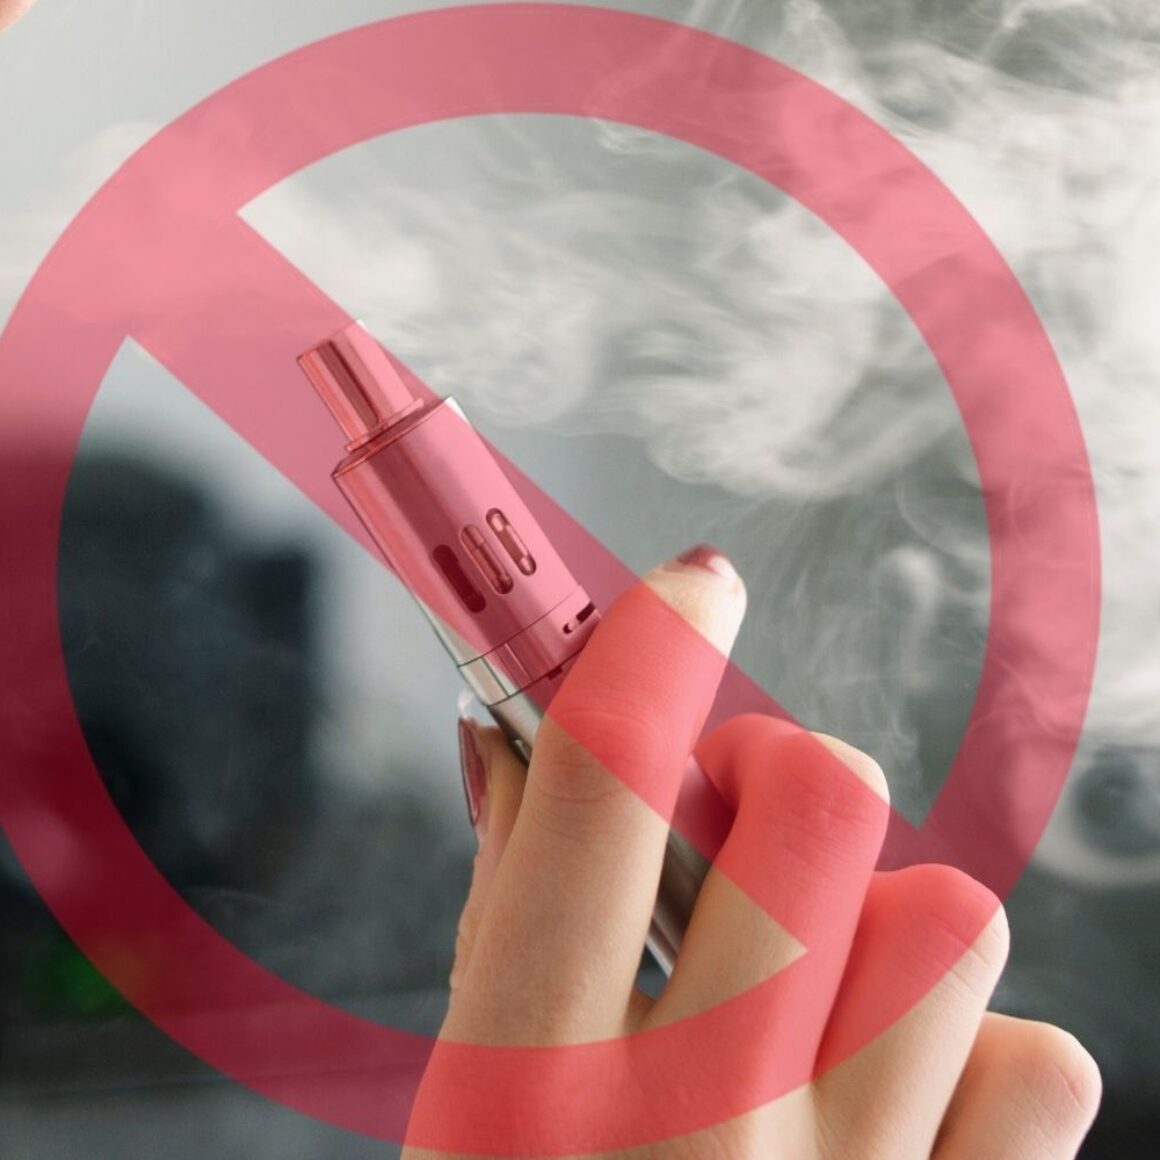 Frau hält E-Zigarette in rechter Hand und bläst Dampfwolke aus; Stoppzeichen darüber gelegt